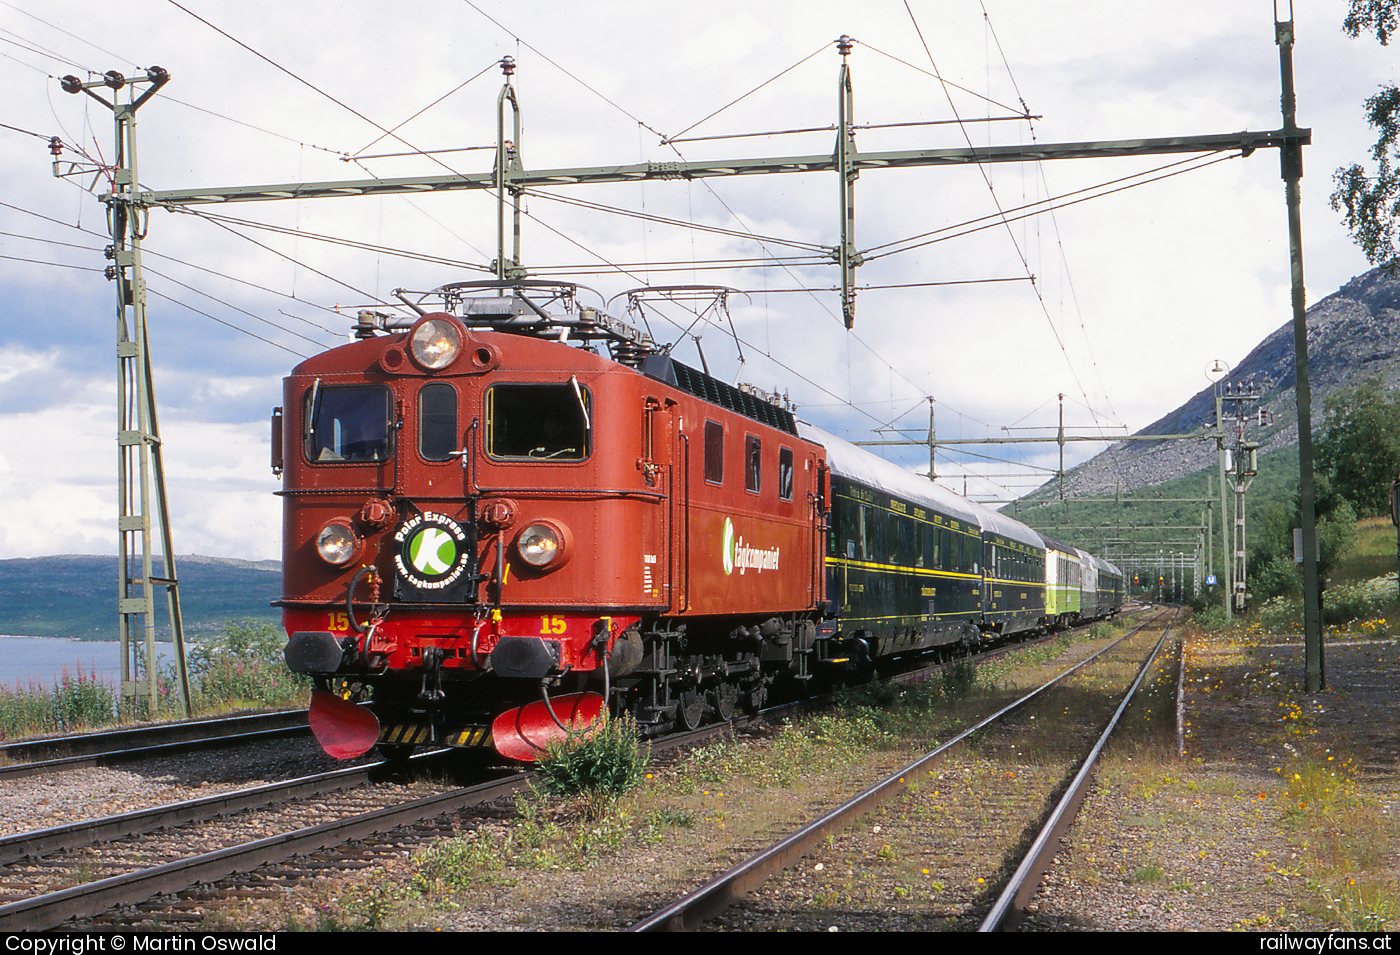 Tagkompaniet Da 15 in Kaisepakte Erzbahn (Malmbanan) Railwayfans